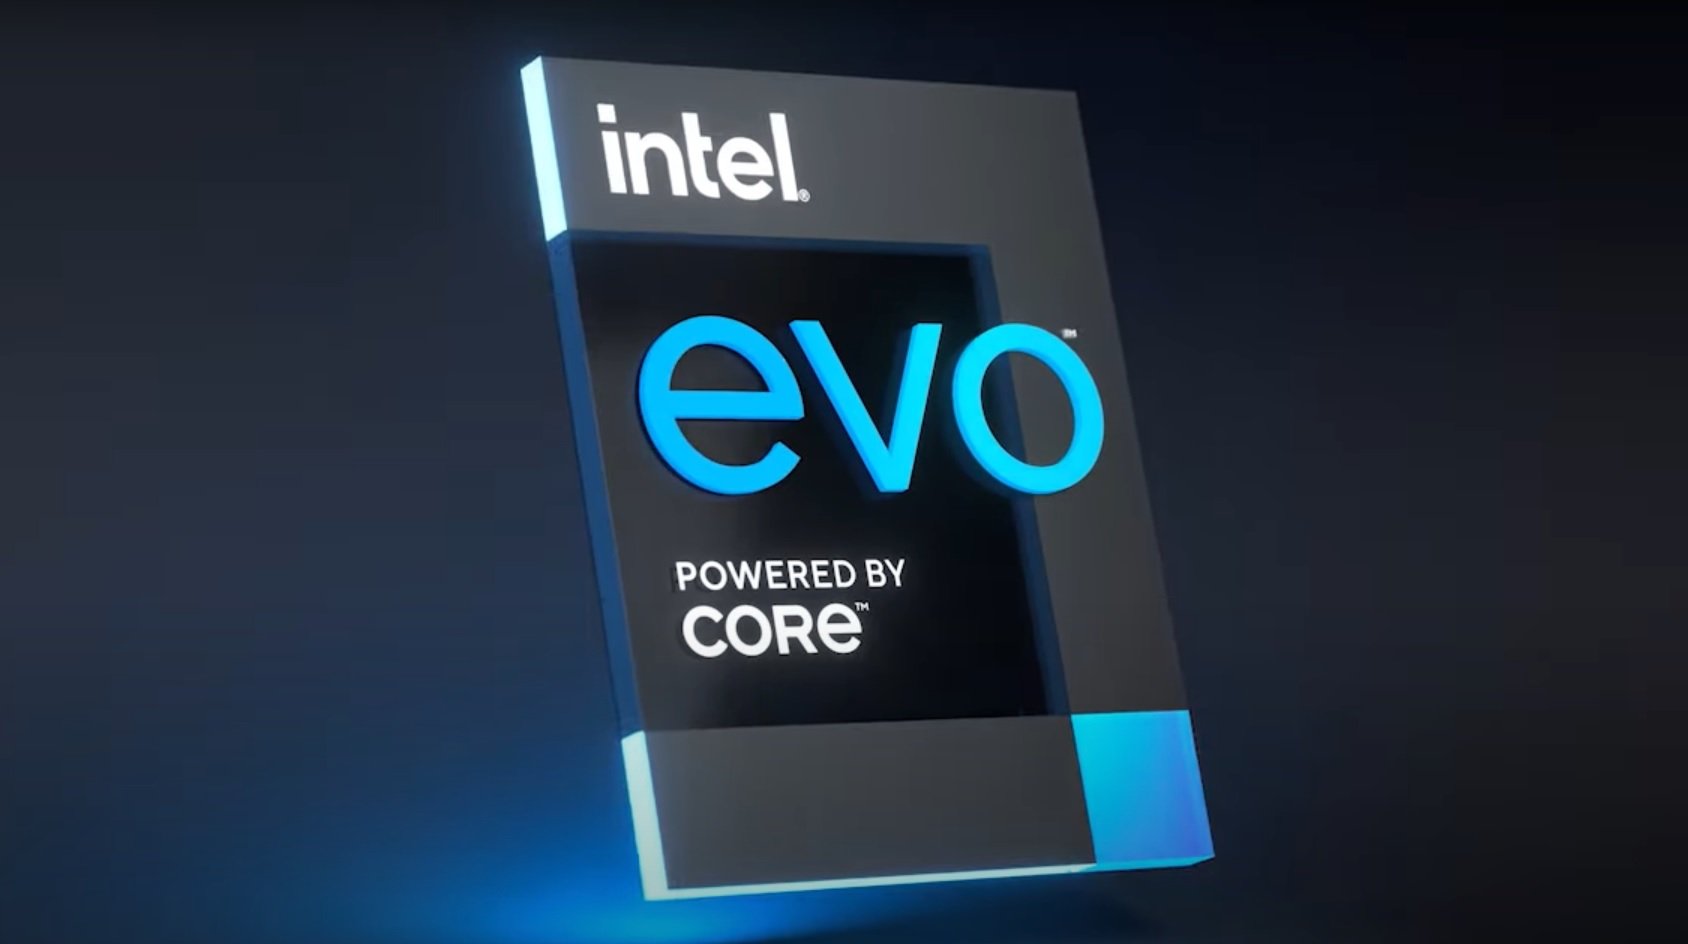 Intel zeigt Vorzüge seiner neuen Intel Evo-Plattform im Video